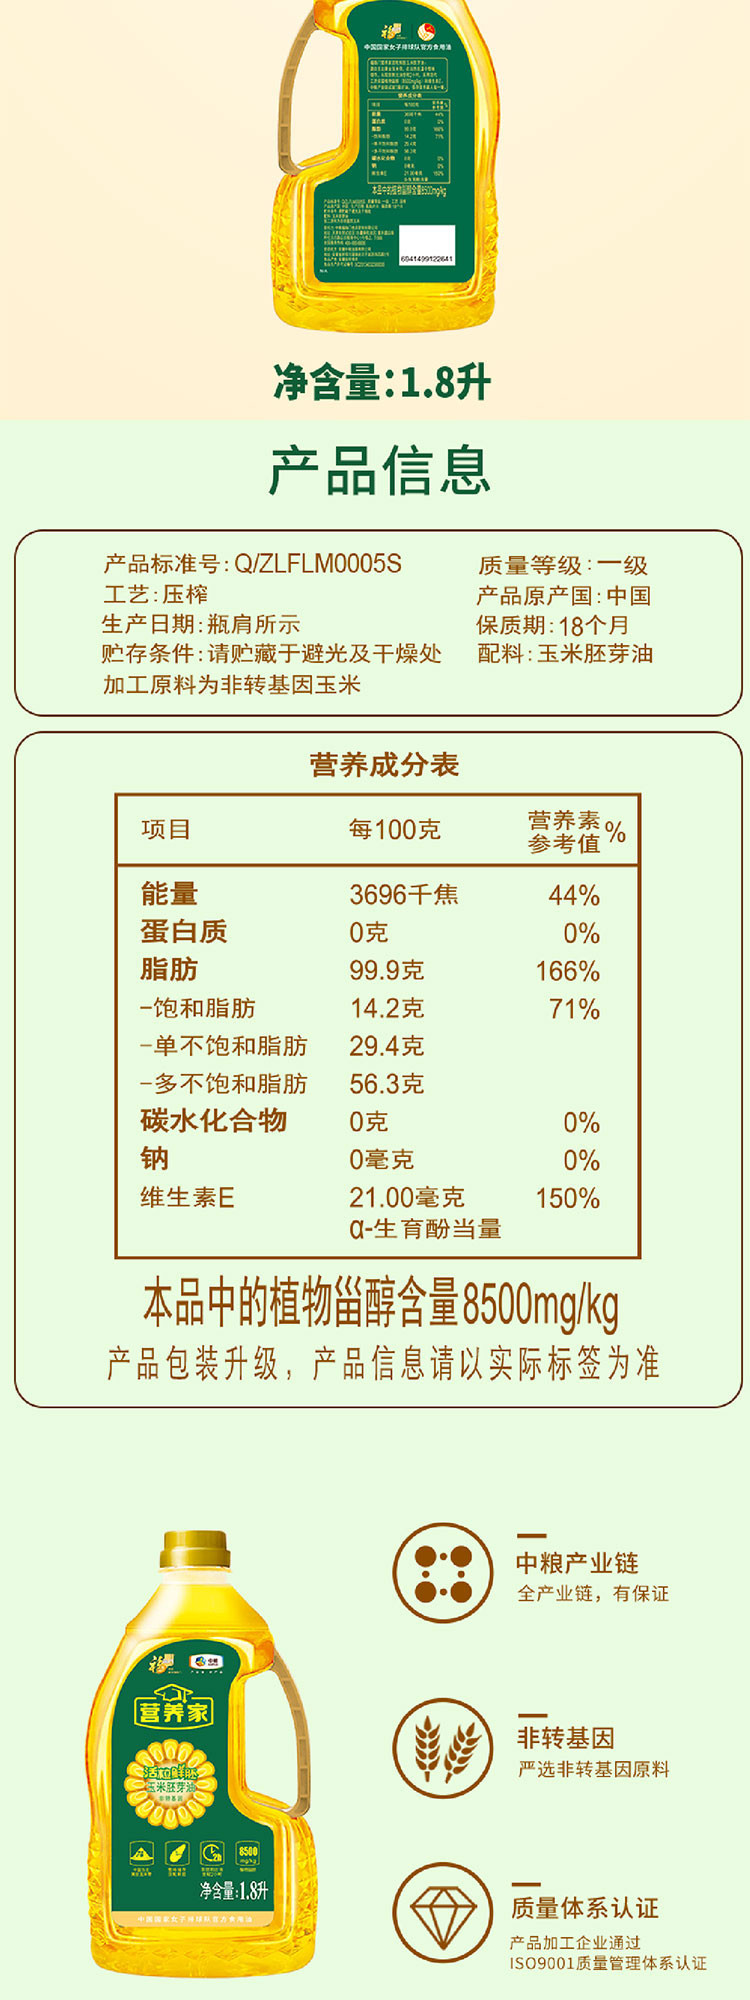 福临门/FULINMEN 营养家玉米胚芽油 1.8L